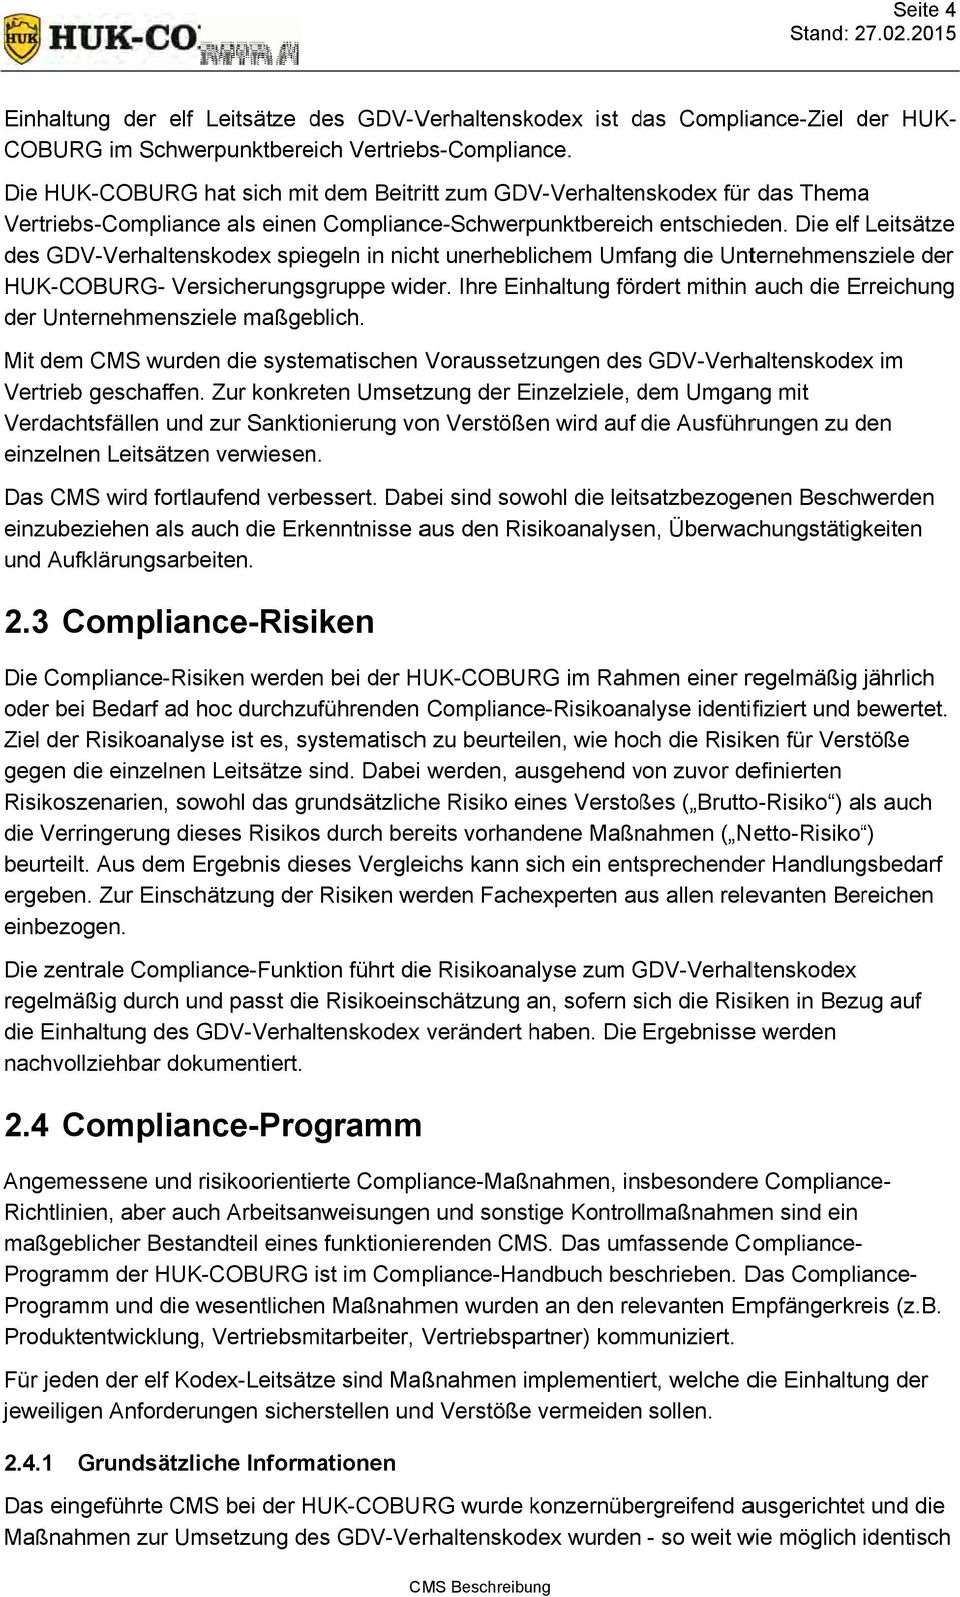 Die elf Leitsätze des GDV-Verhaltenskodex Verhaltenskodex spiegeln in nicht unerheblichem Umfang die Unternehmensziele der HUK-COBURG- Versicherungsgruppe wider.